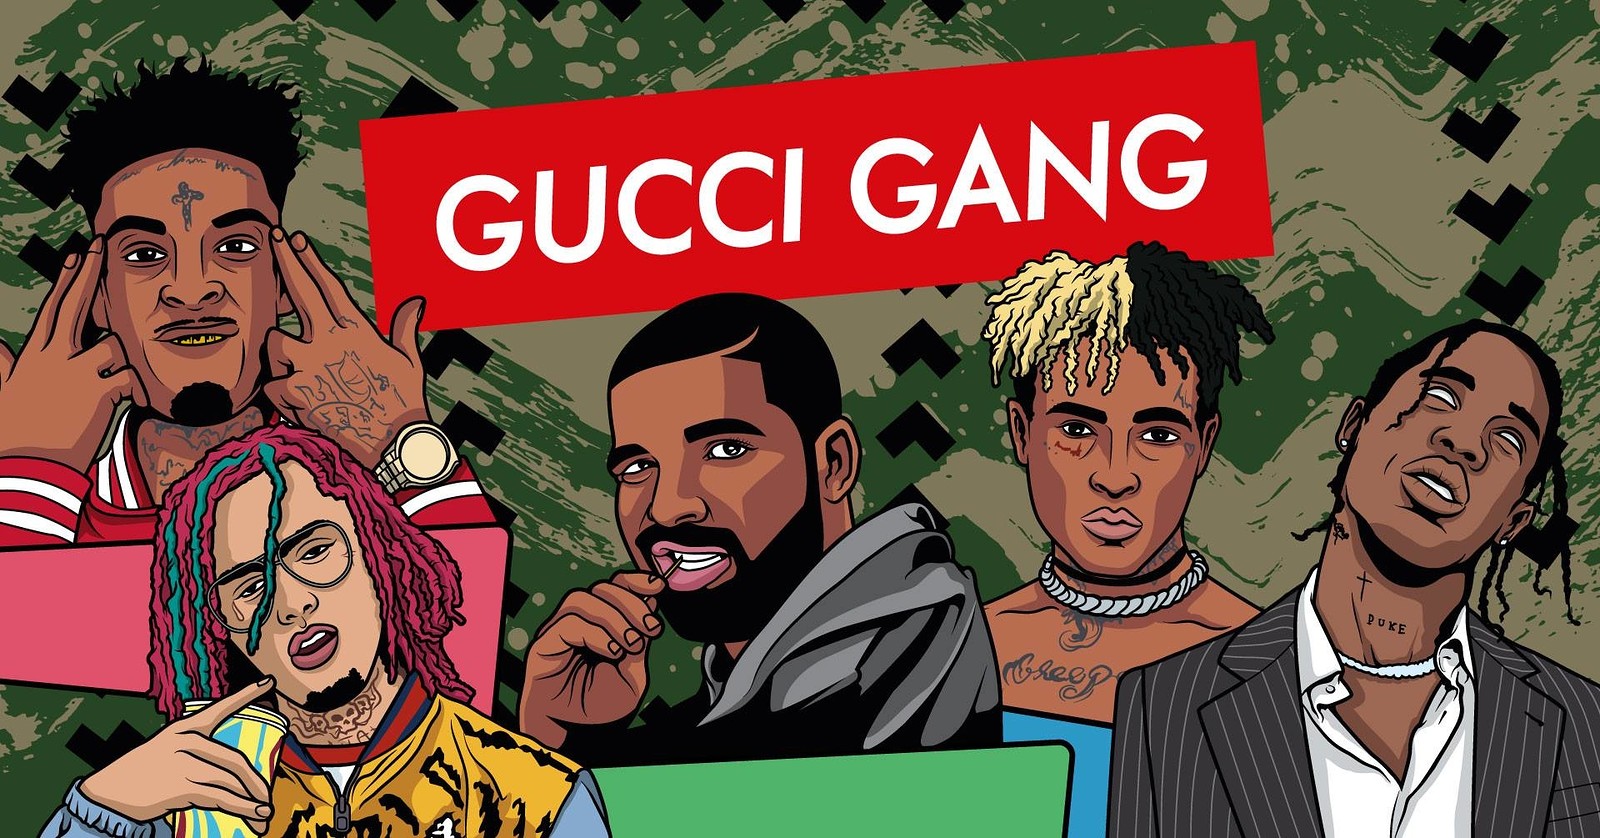 Gucci Gang - Trap Night at The Lanes